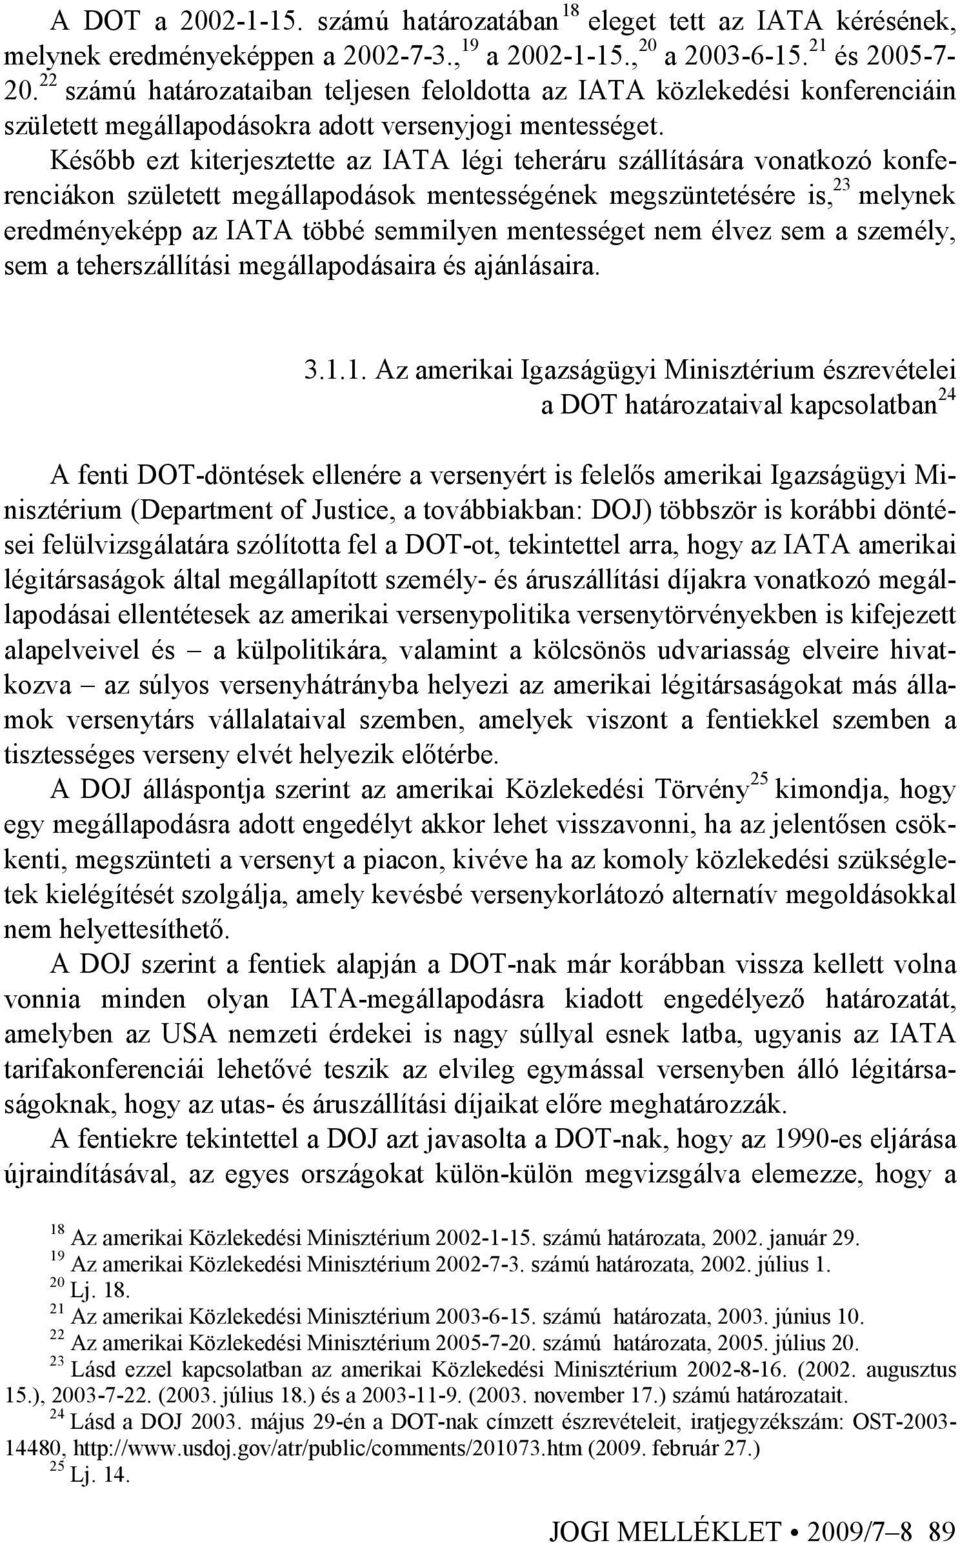 Késıbb ezt kiterjesztette az IATA légi teheráru szállítására vonatkozó konferenciákon született megállapodások mentességének megszüntetésére is, 23 melynek eredményeképp az IATA többé semmilyen